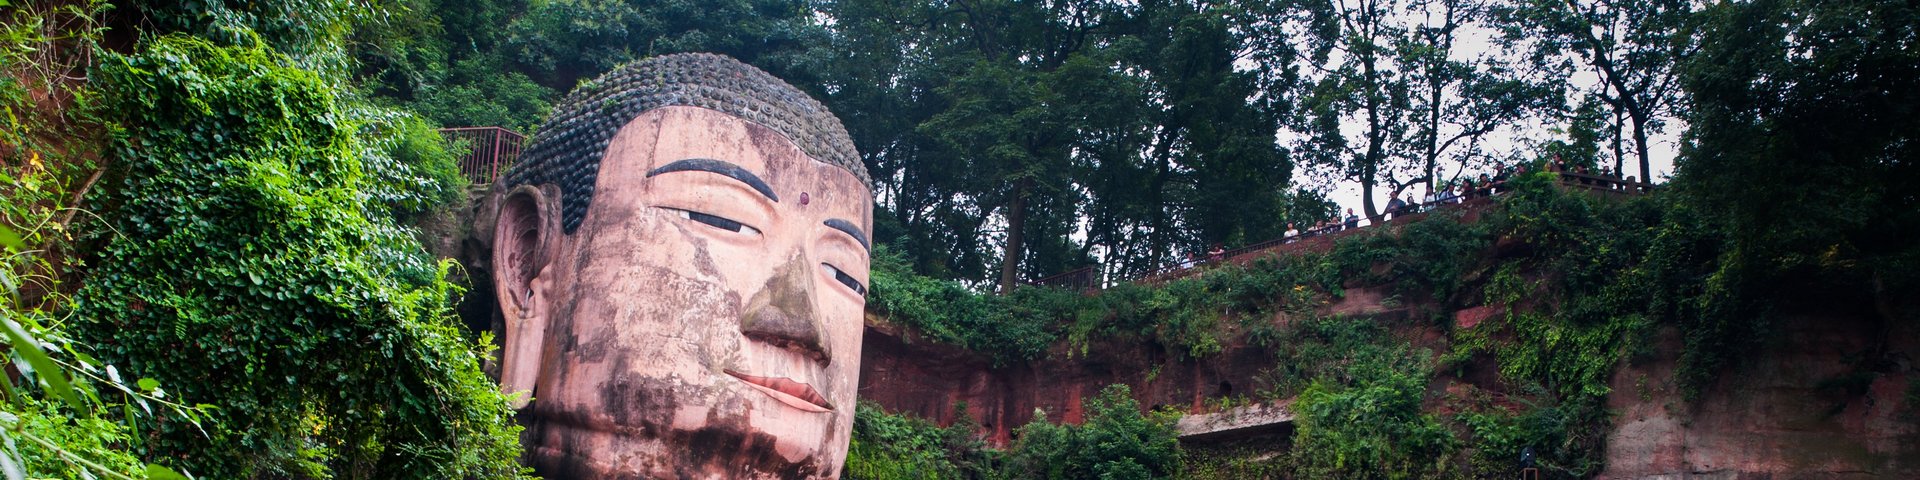 Der Buddha von Leshan